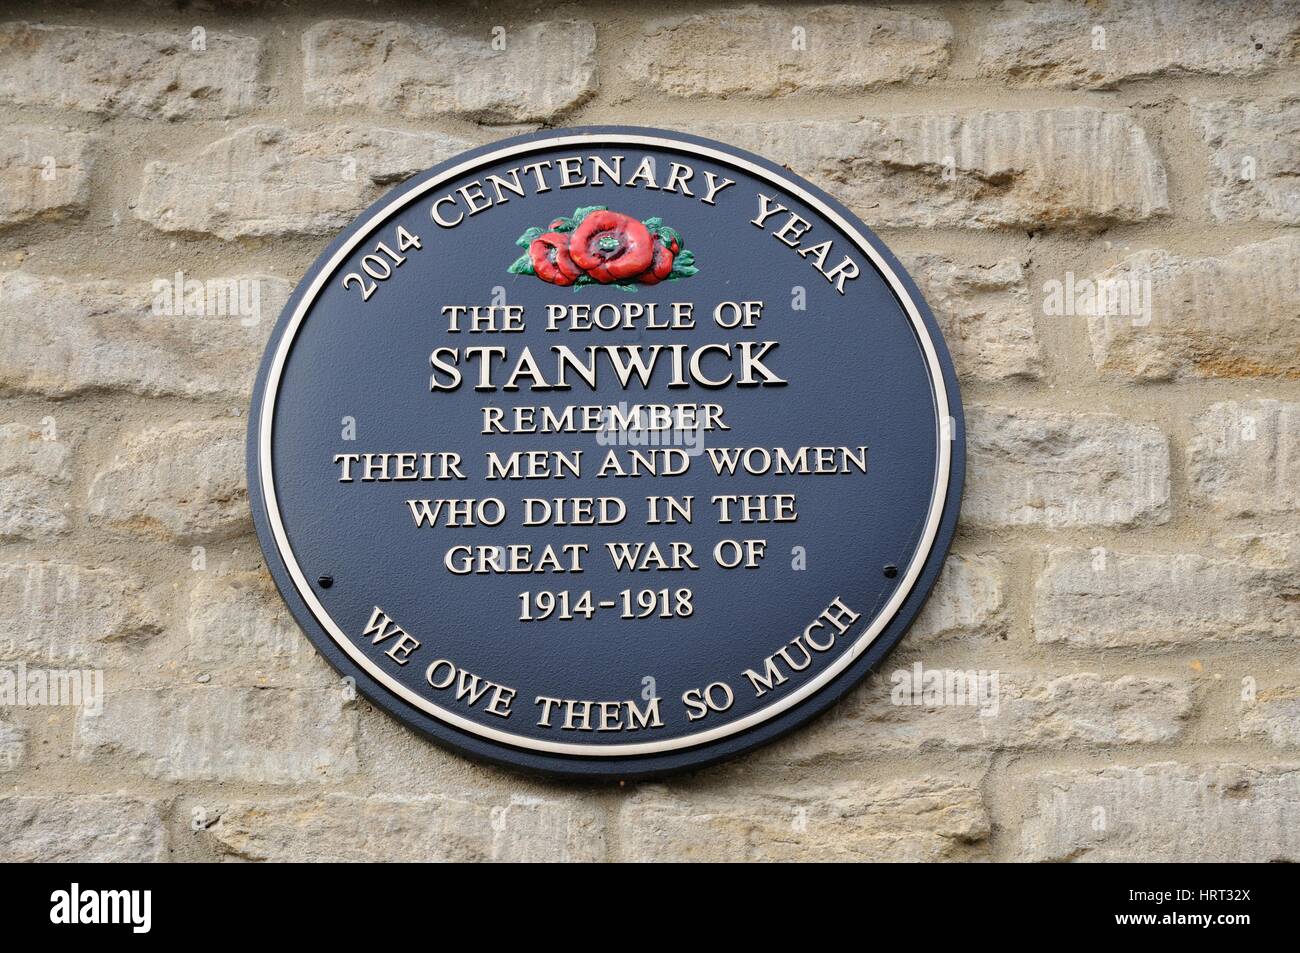 Placa en la tienda de la vieja escuela, Stanwick, Northamptonshire, 2014 Año del Centenario para recordar a los hombres y mujeres que murieron en la Gran Guerra de 1914 - 1918 Foto de stock